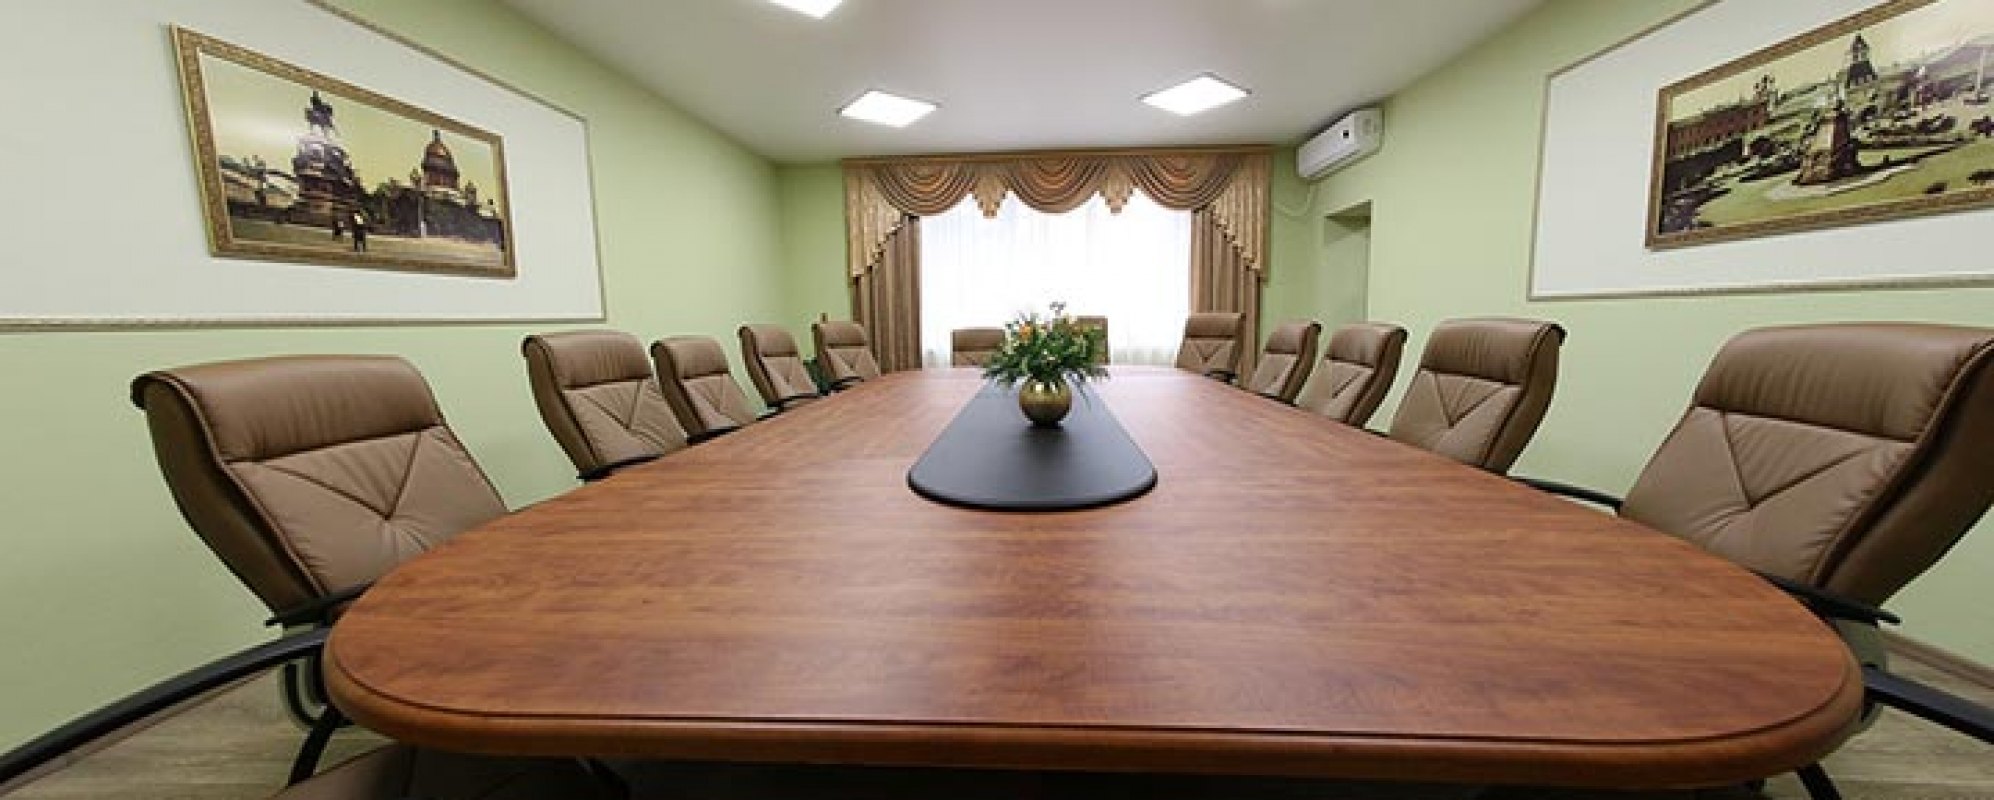 Фотографии комнаты для переговоров Зал переговоров